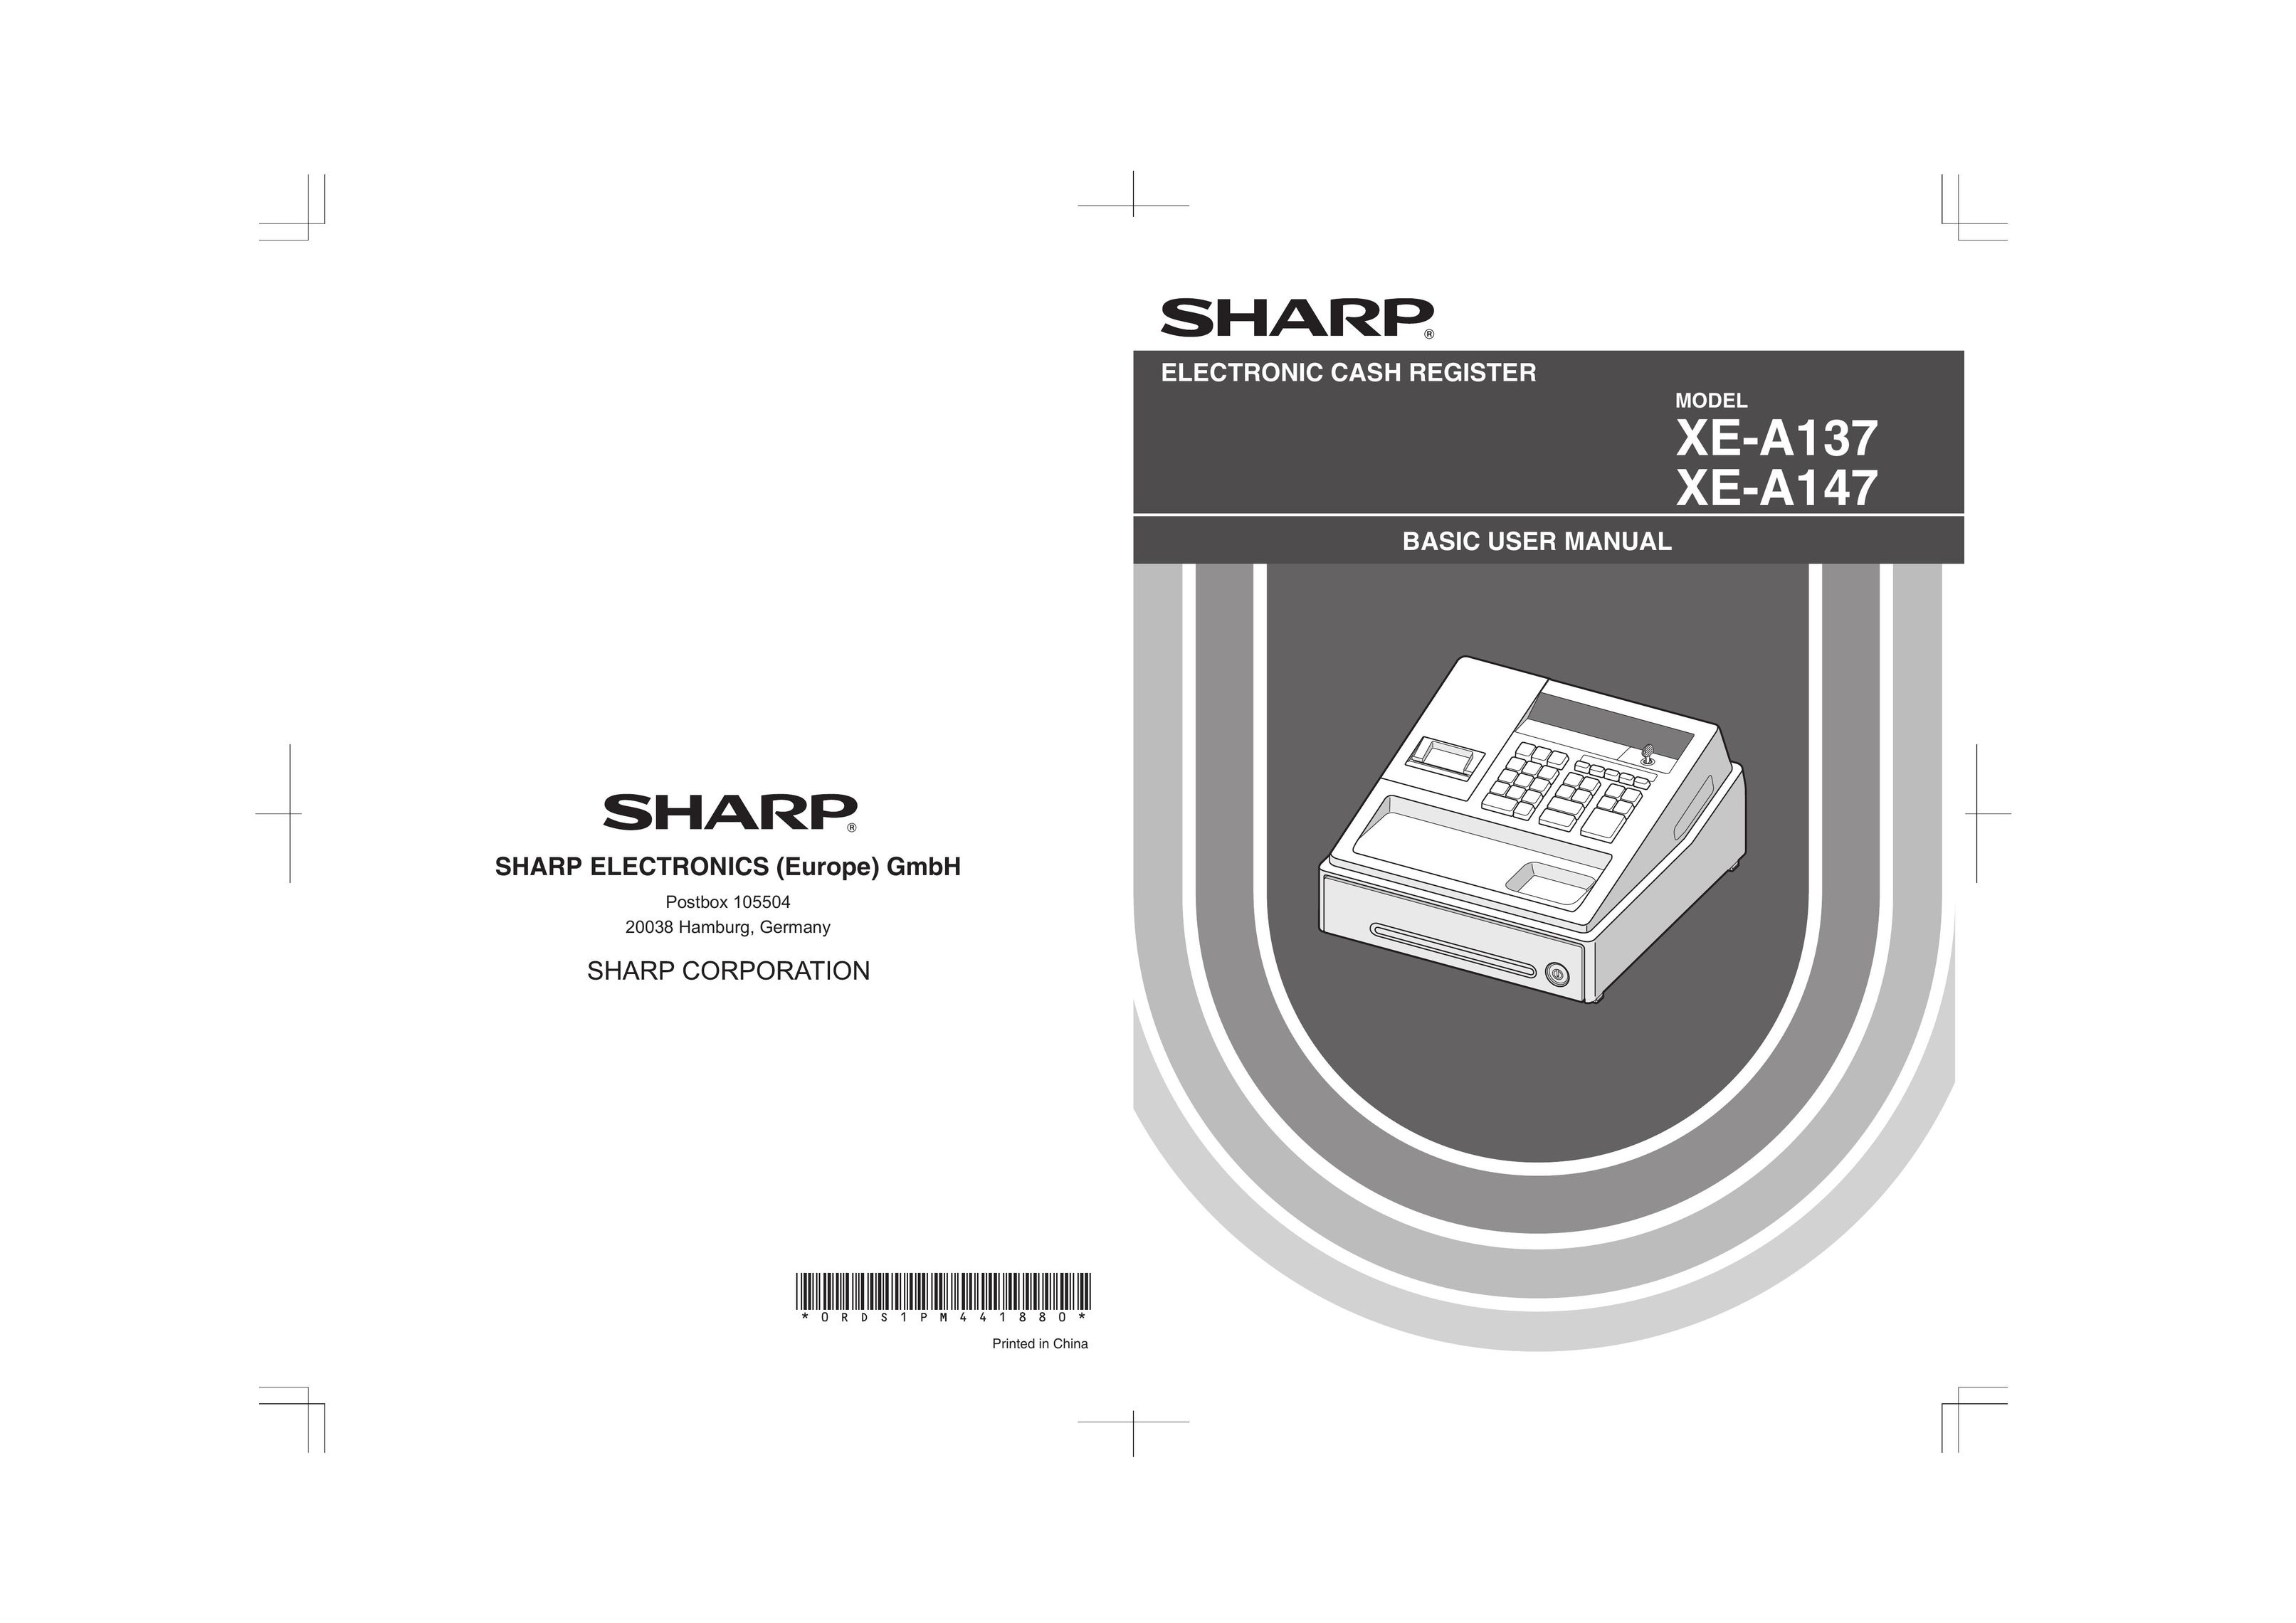 Sharp XE-A137 Cash Register User Manual